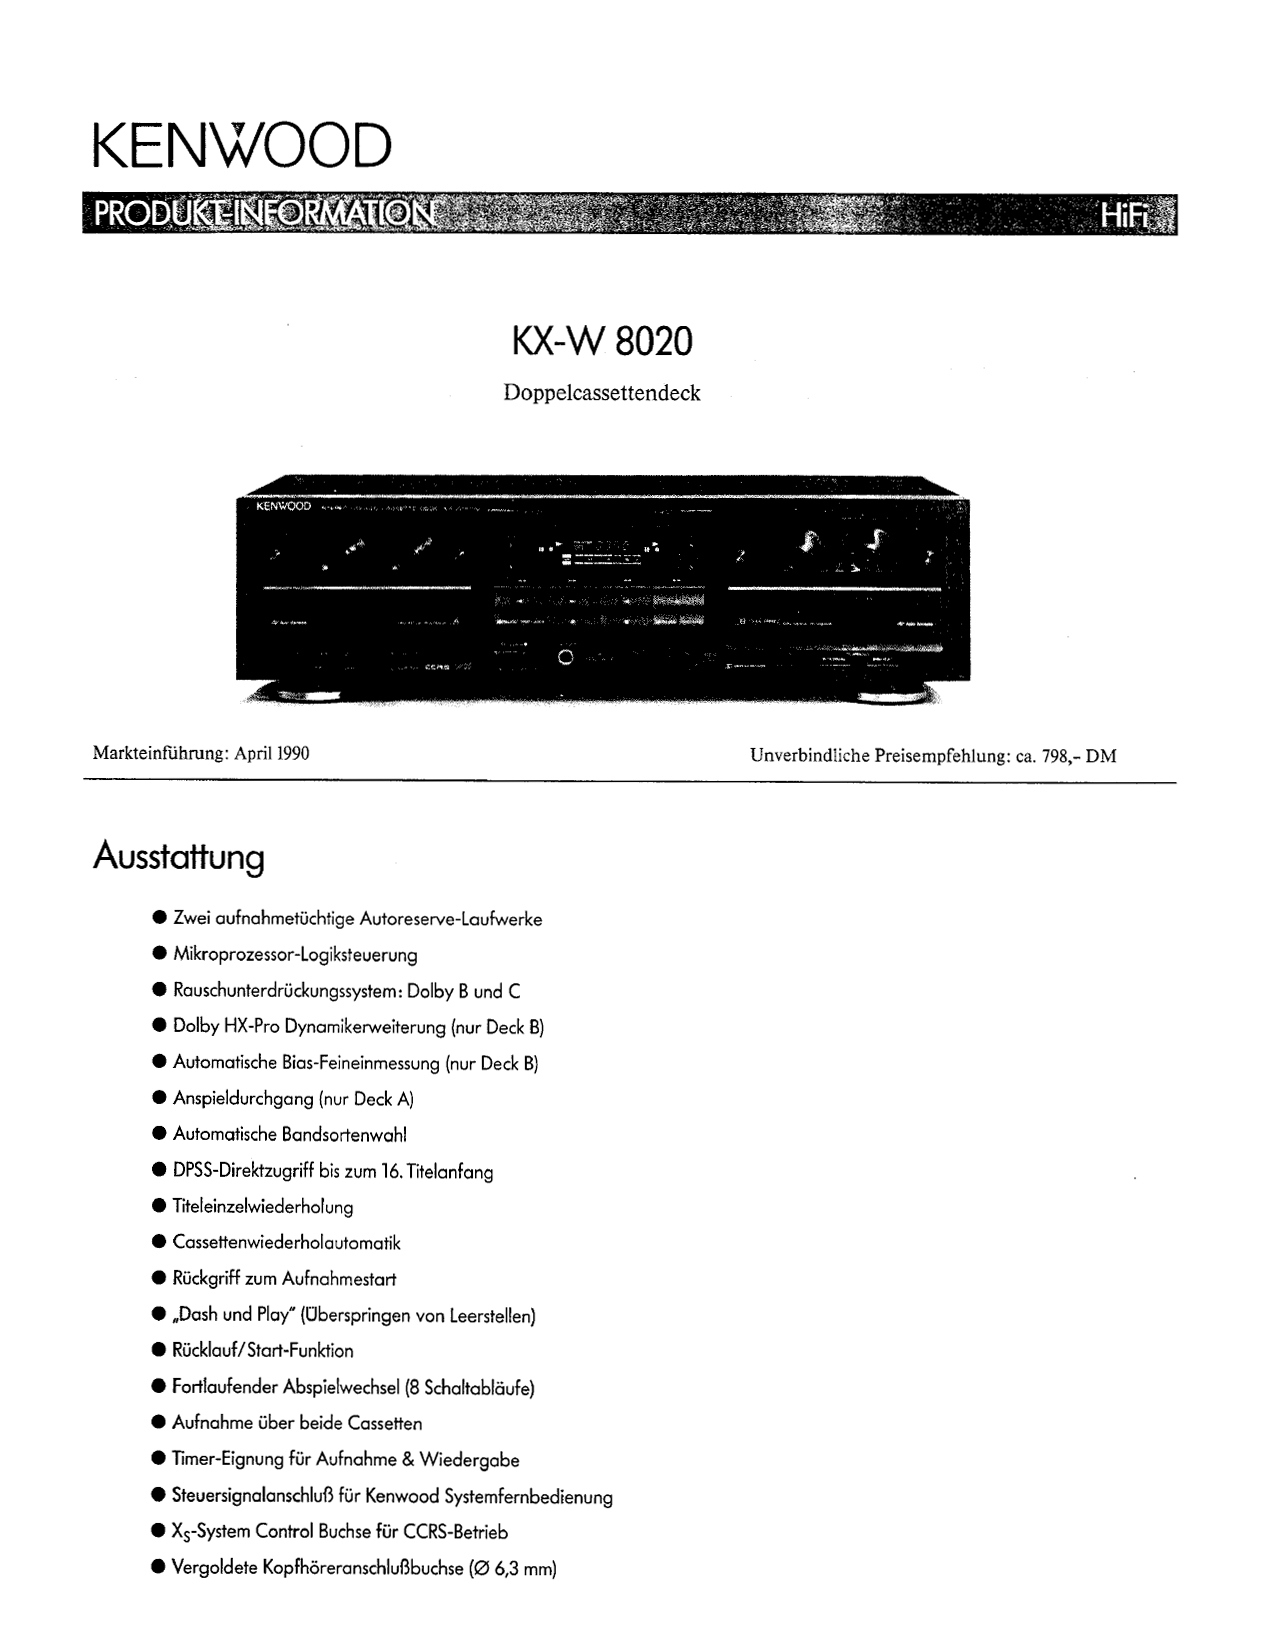 Kenwood KX-W 8020-Daten-1990.jpg